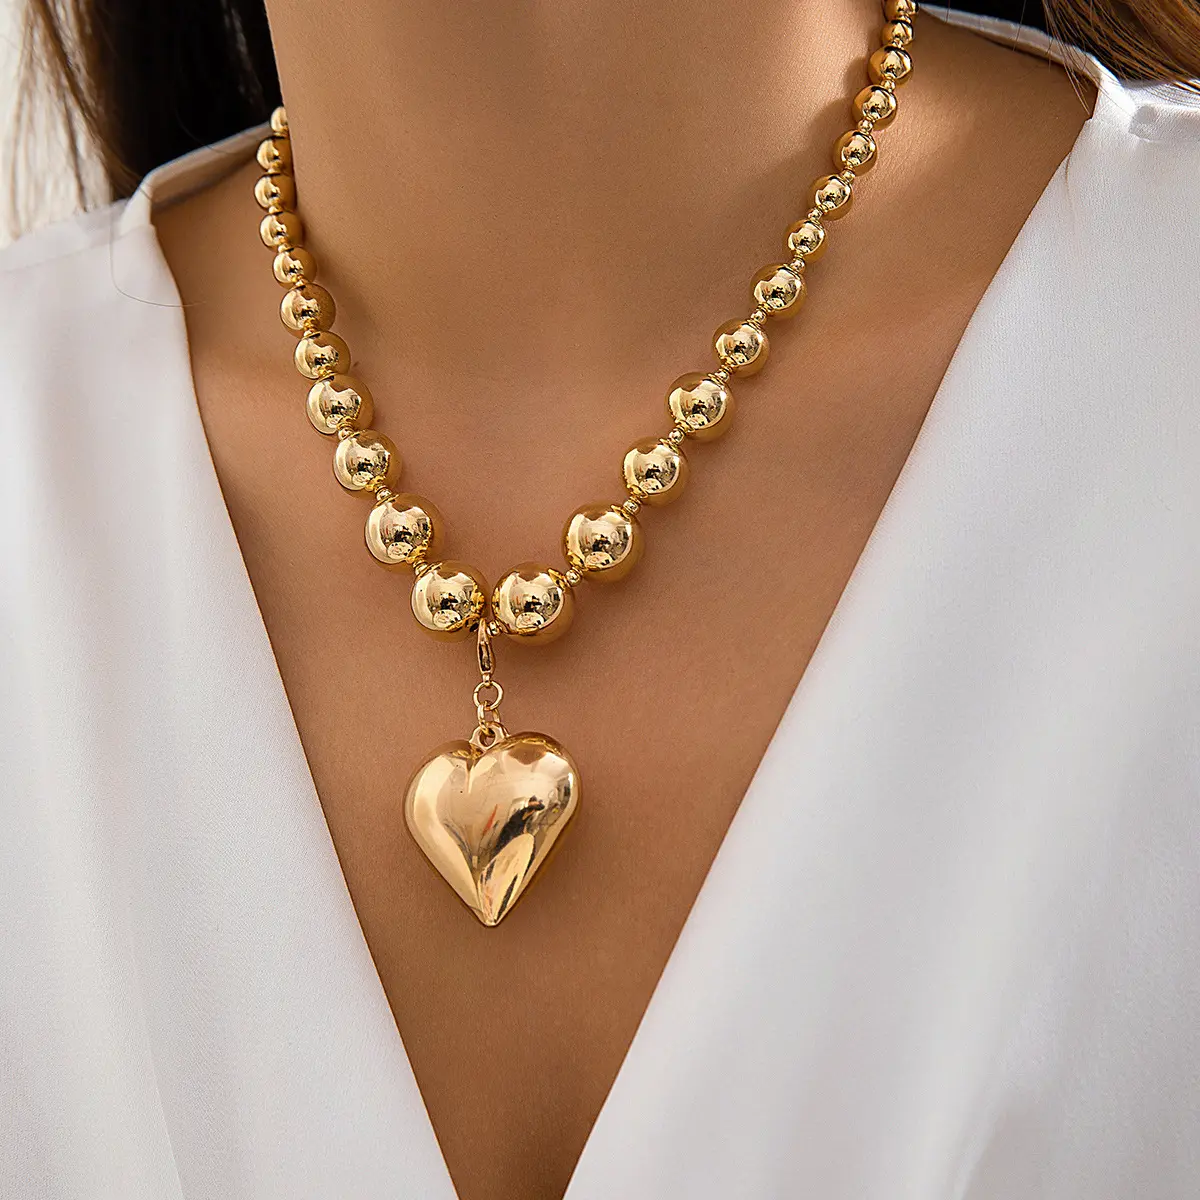 Vente chaude gros plaqué or perles coeur forme pendentif collier pour femmes Punk collier mode bijoux tour de cou